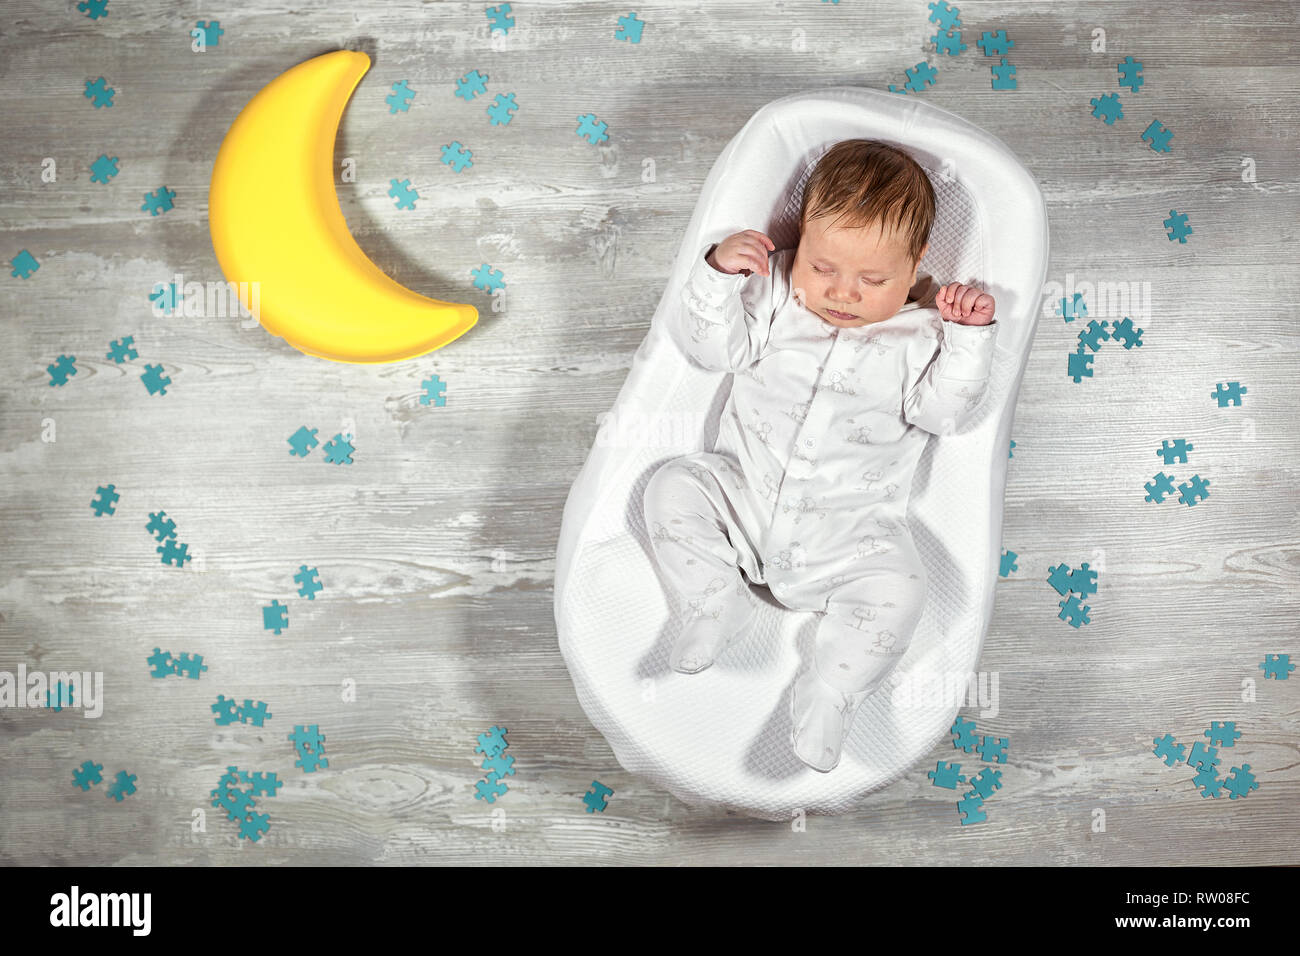 Bébé nouveau-né dort dans un matelas orthopédique spécial Baby cocoon, sur  un sol en bois, de jouets et casse-tête autour de la lune. Calme et bon  sommeil chez les nouveau-nés Photo Stock -